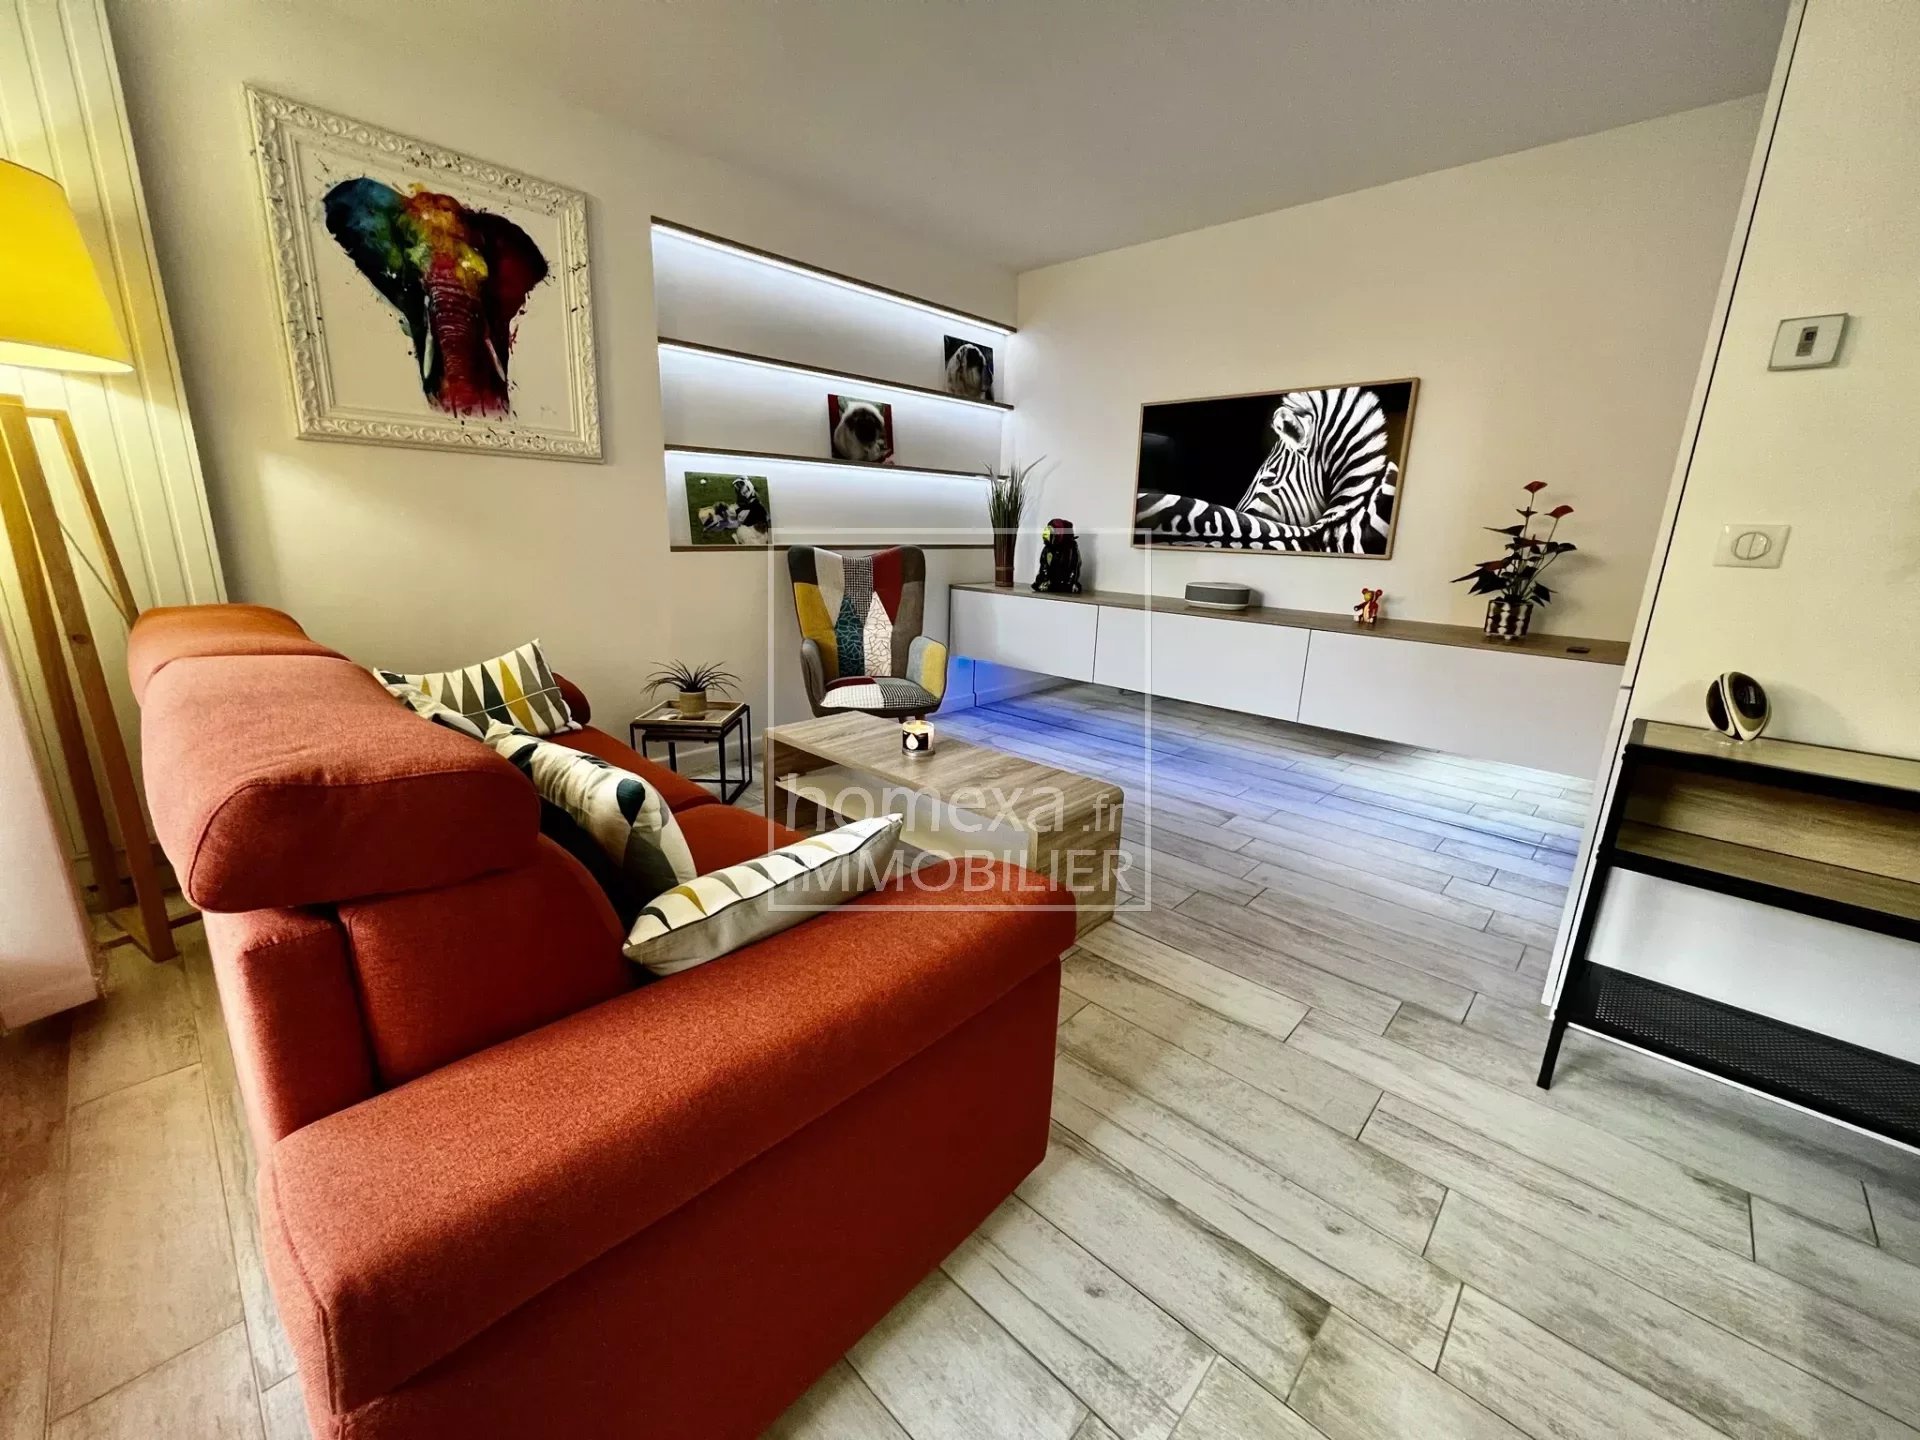 Vente Appartement 65m² 3 Pièces à Valbonne (06560) - Homexa